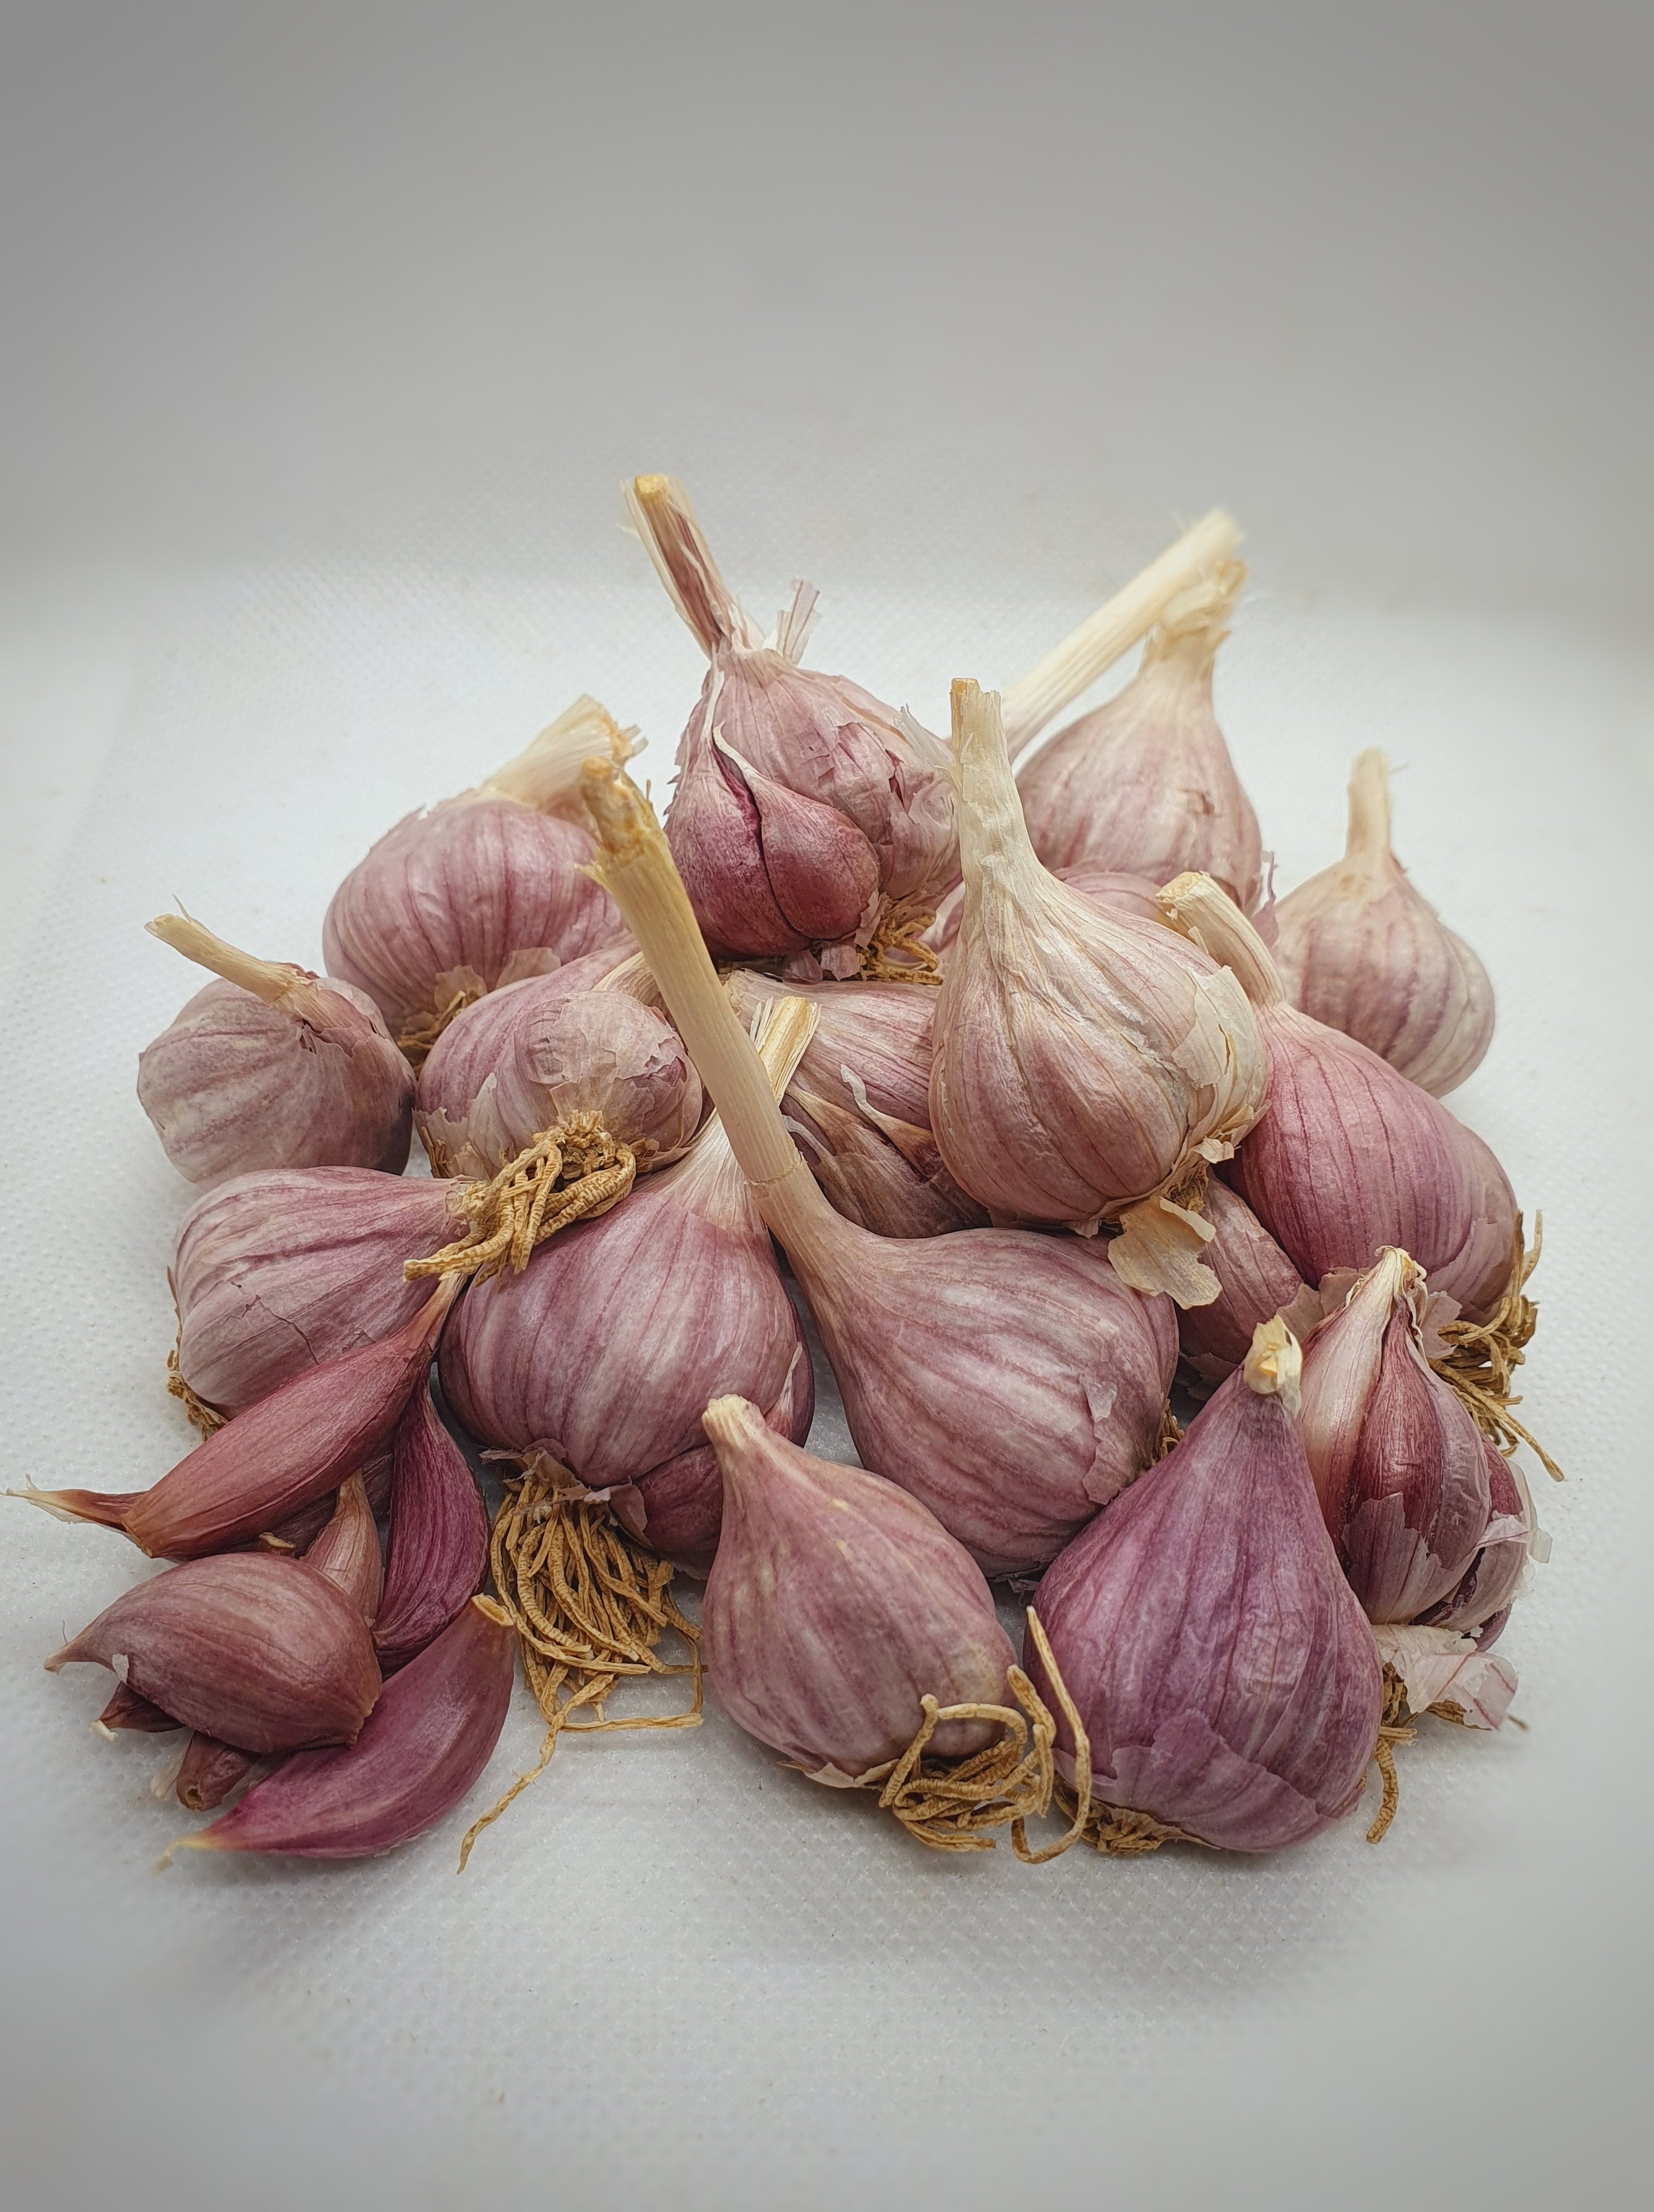 Native Pink Garlic / देशी गुलाबी लसूण